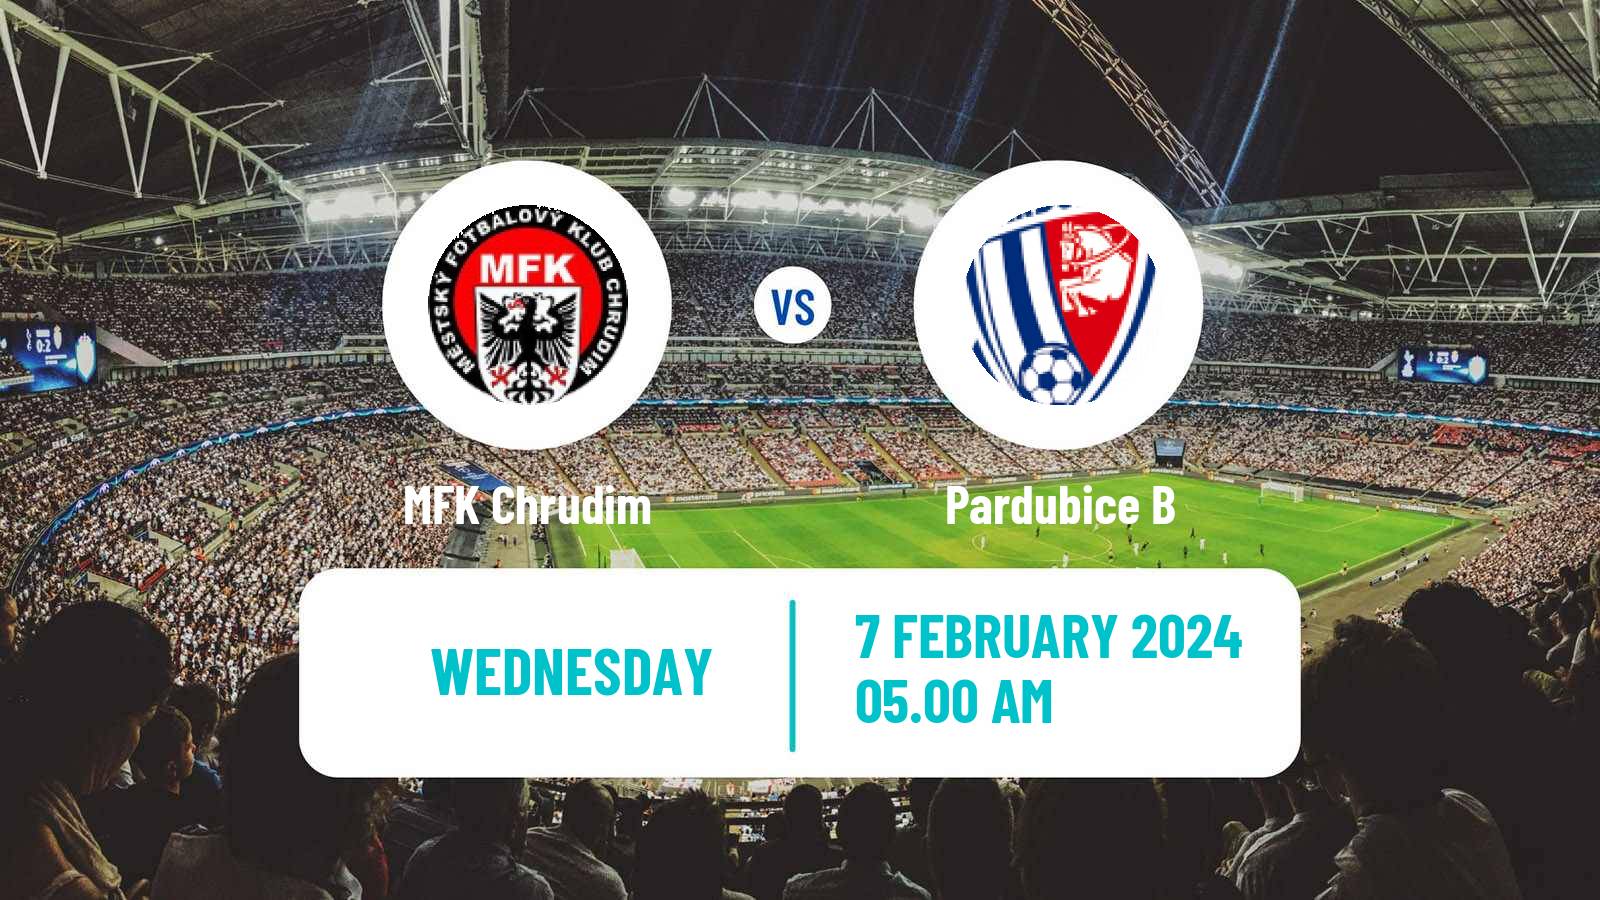 Soccer Club Friendly Chrudim - Pardubice B